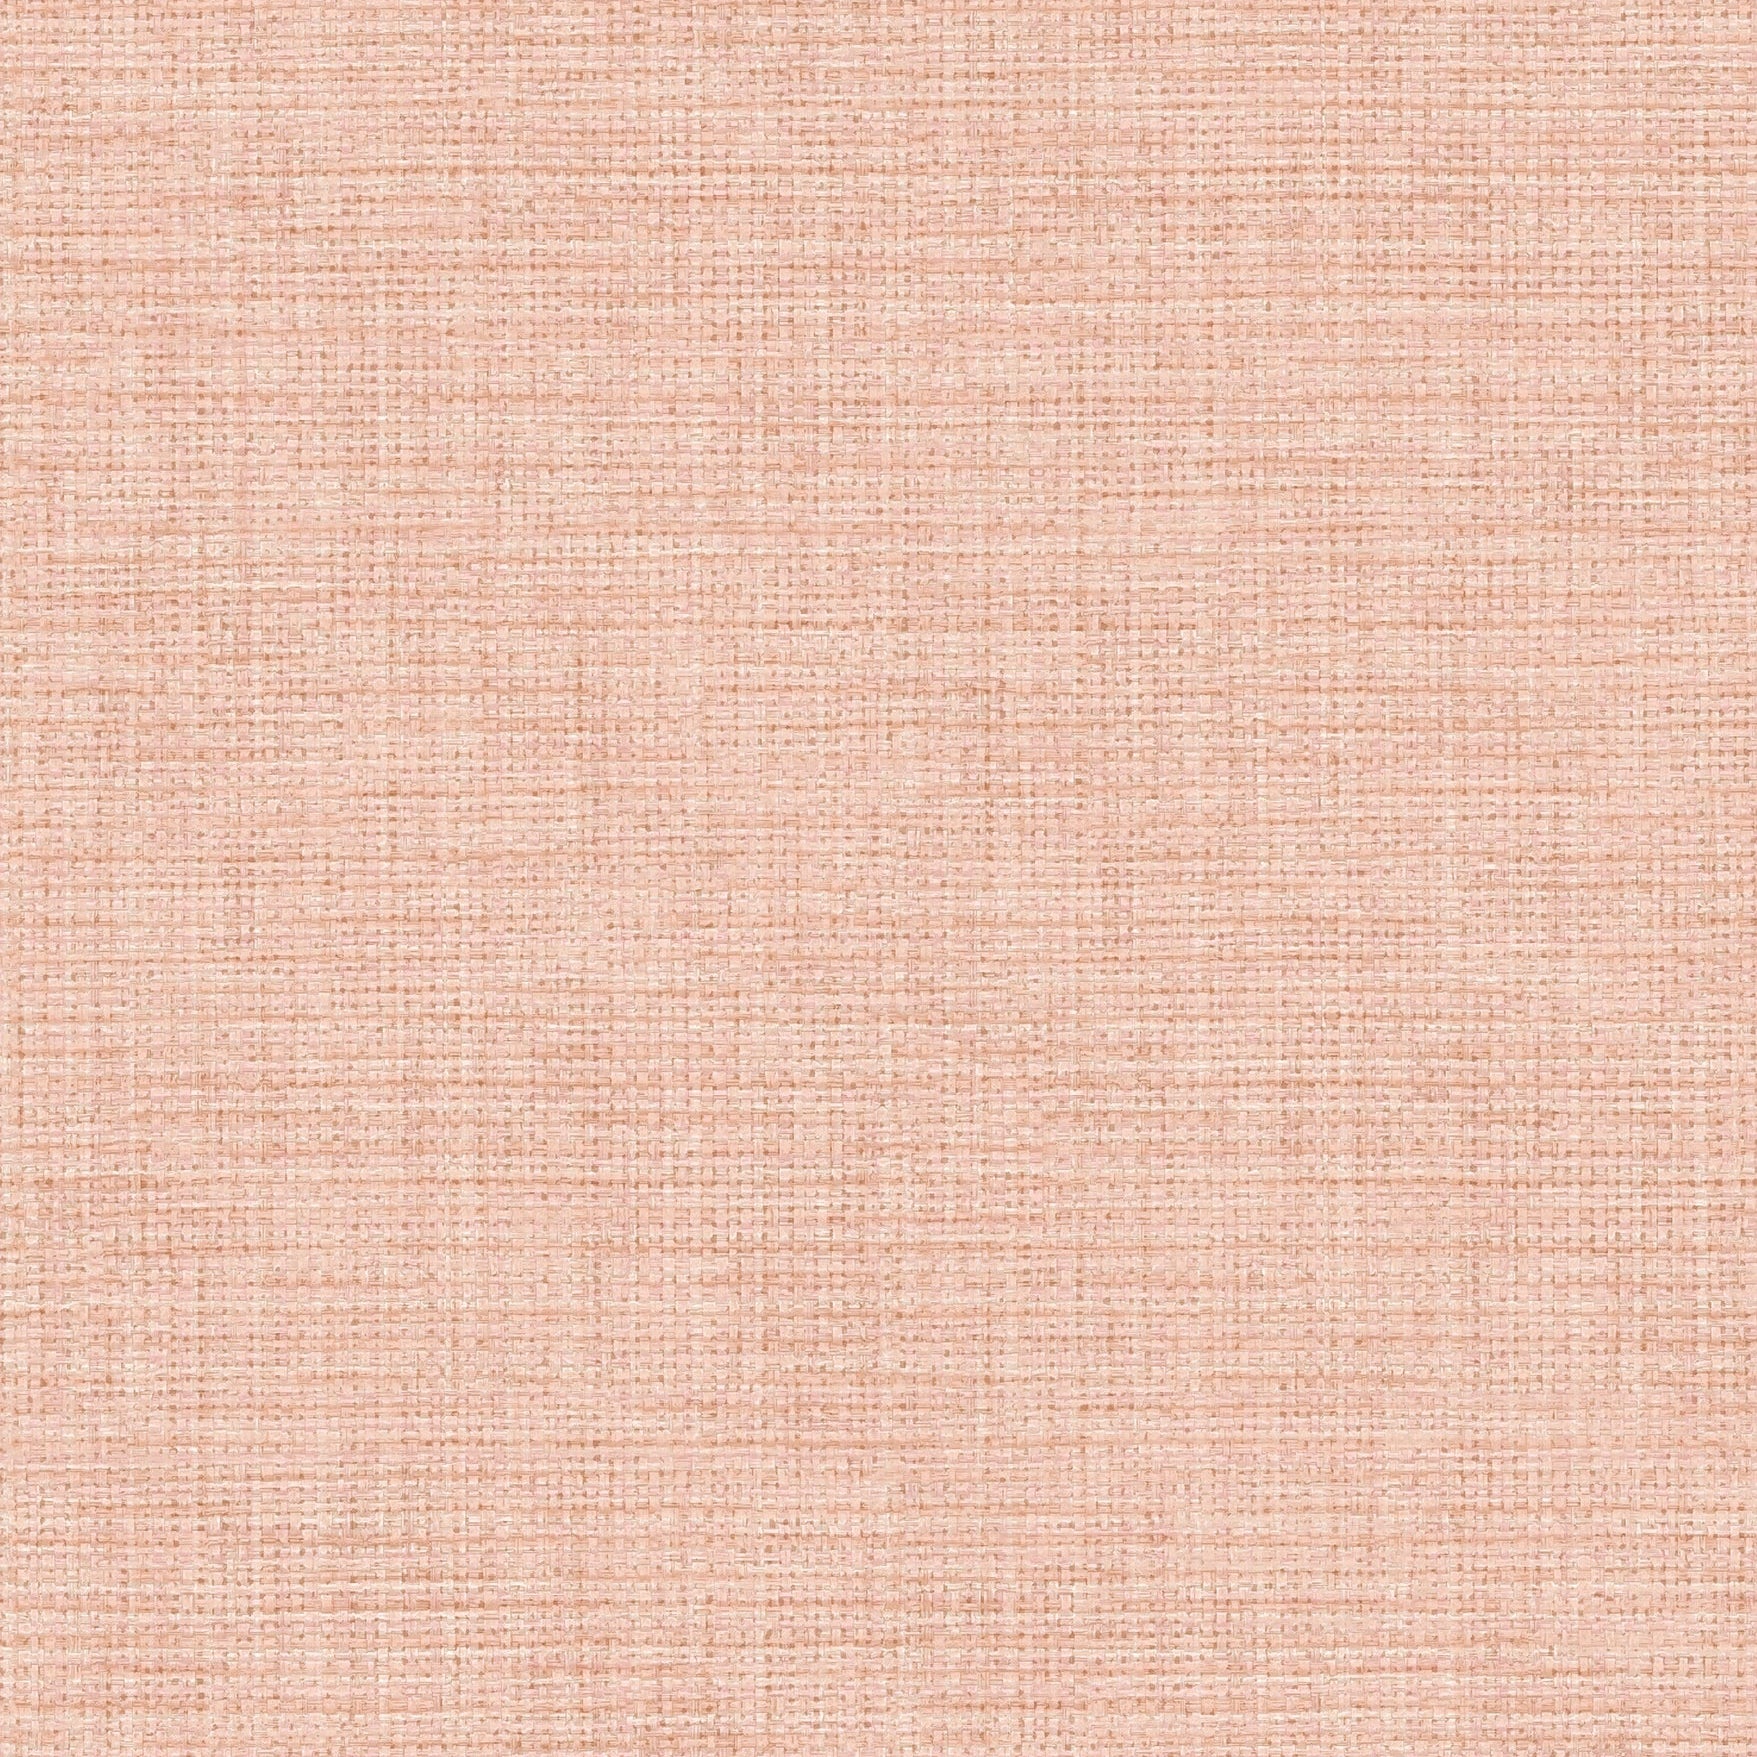 Find 2766-003040 KItchen  Bath Essentials Pratt Pink Grass weave Brewster Wallpaper